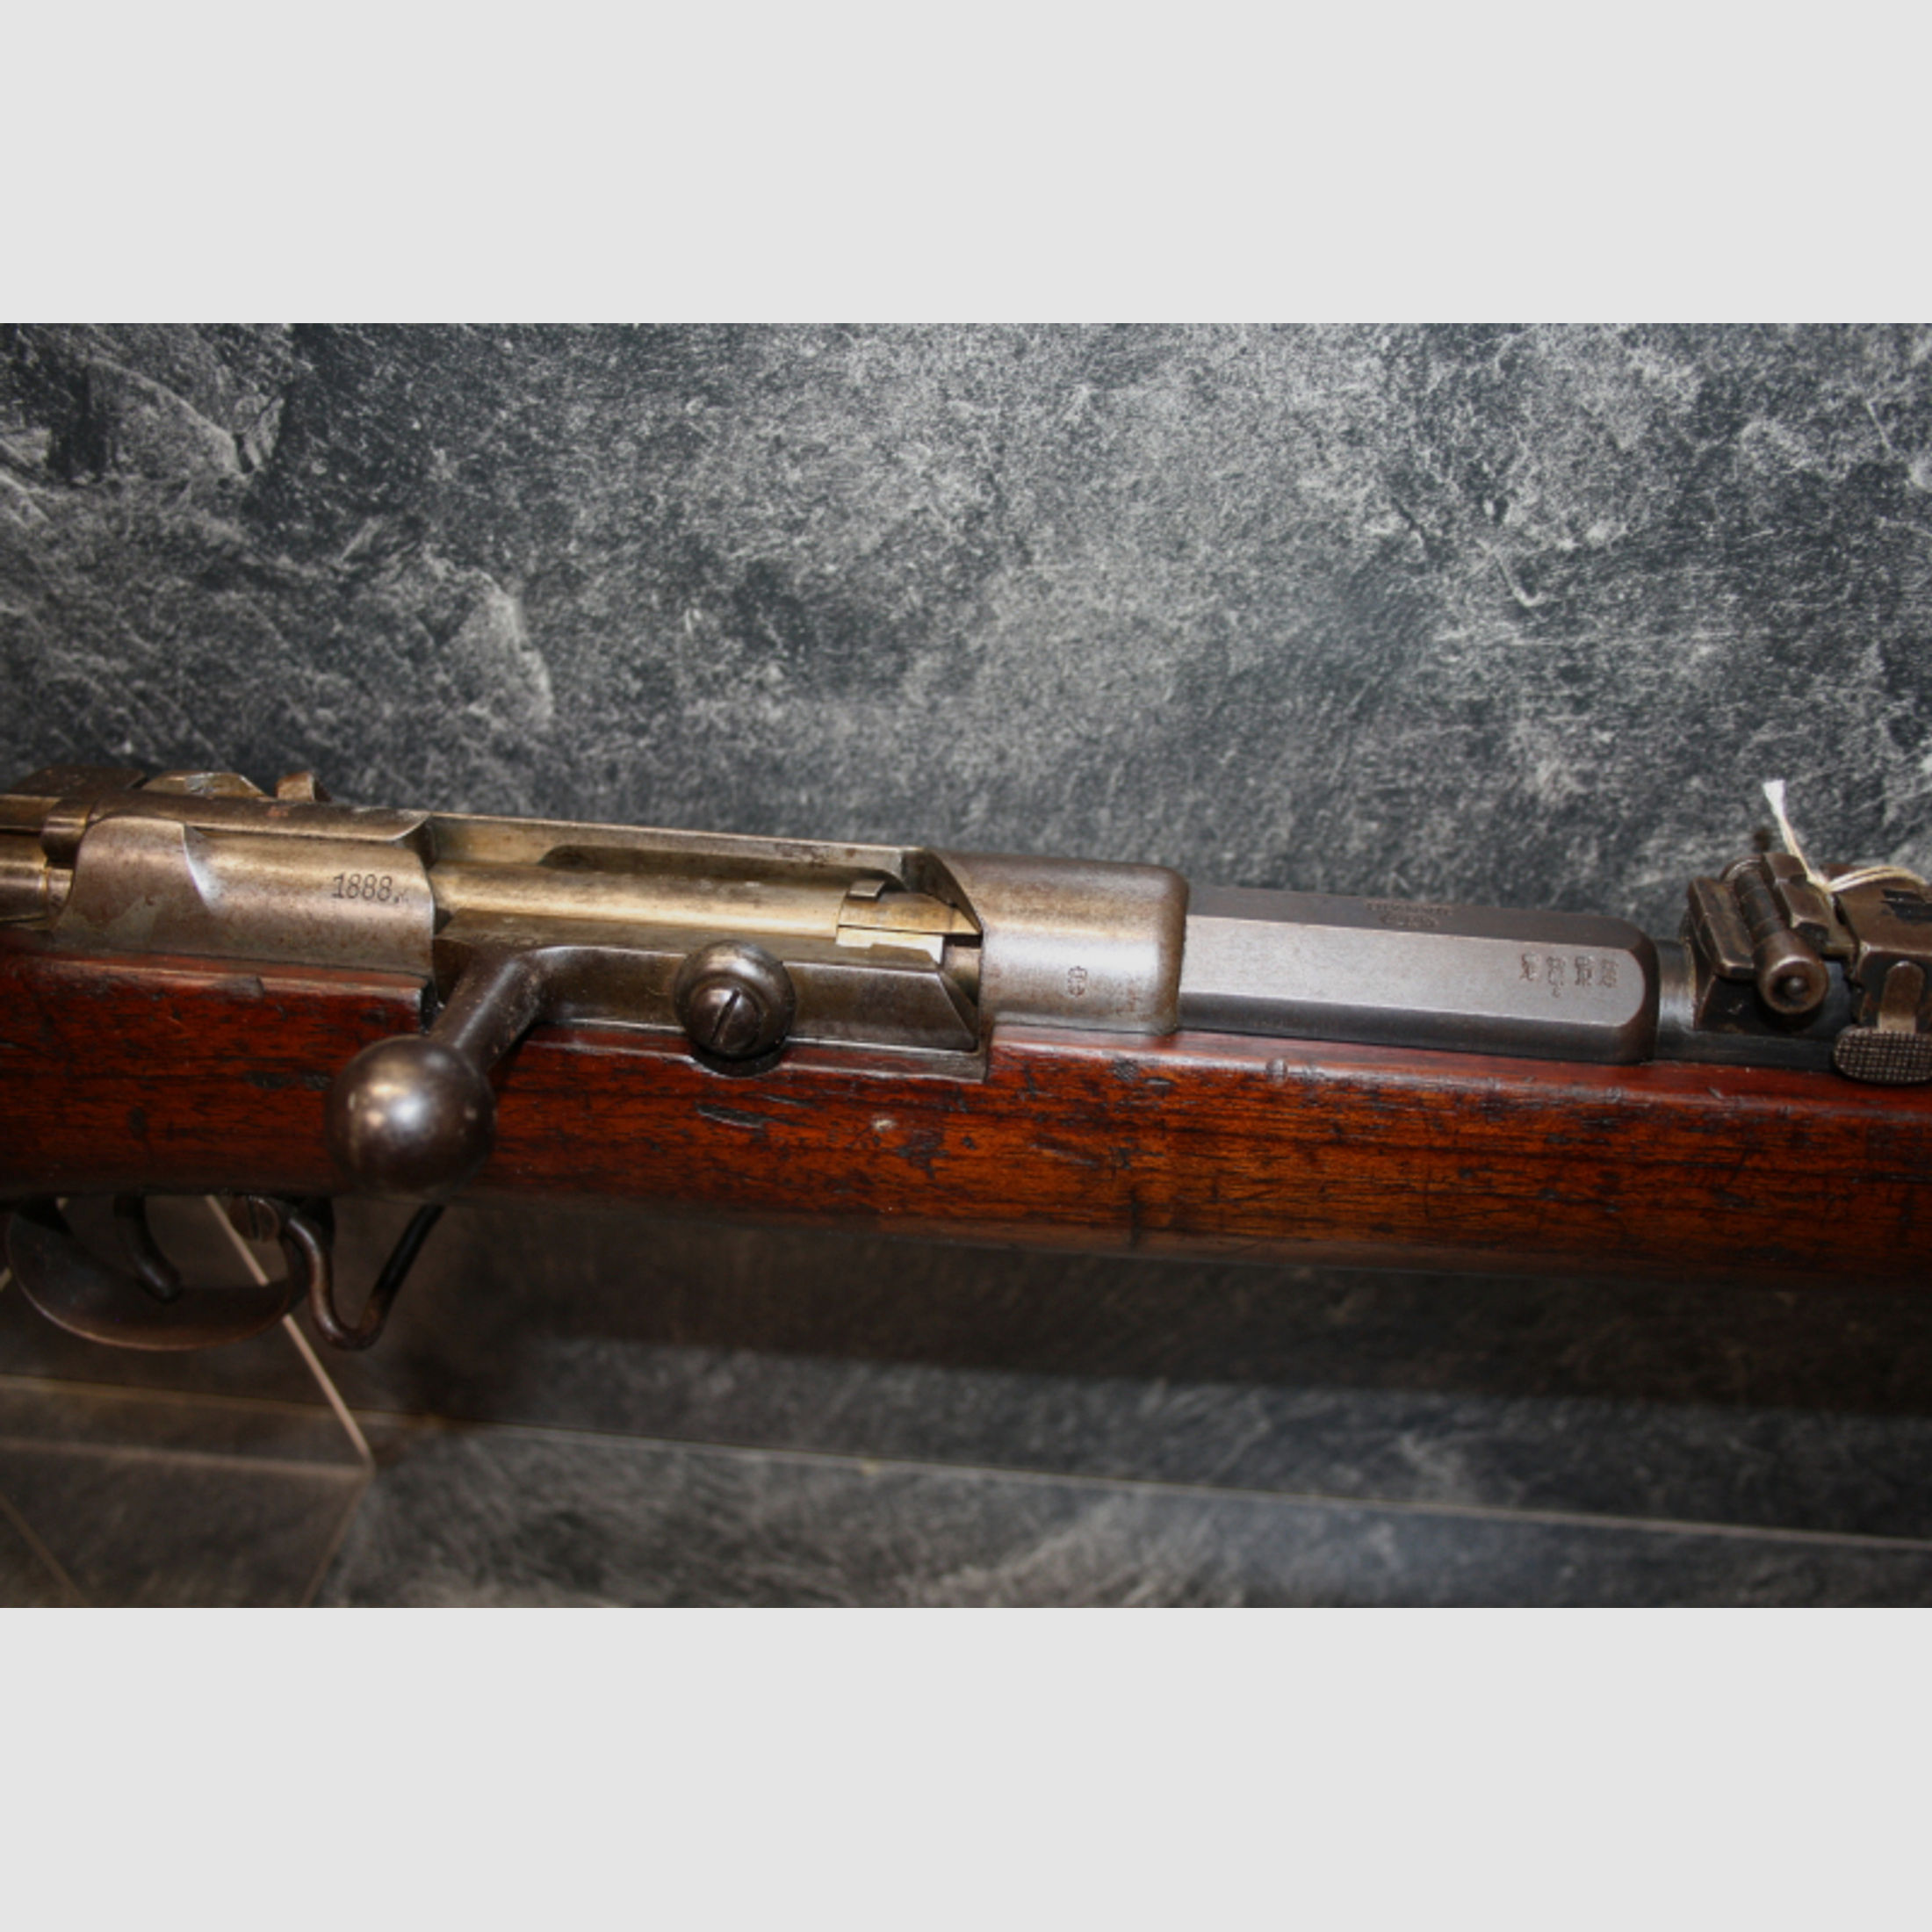 Gewehr Danzig 71/84 1888 mit Röhrenmagazin11x60R#9332